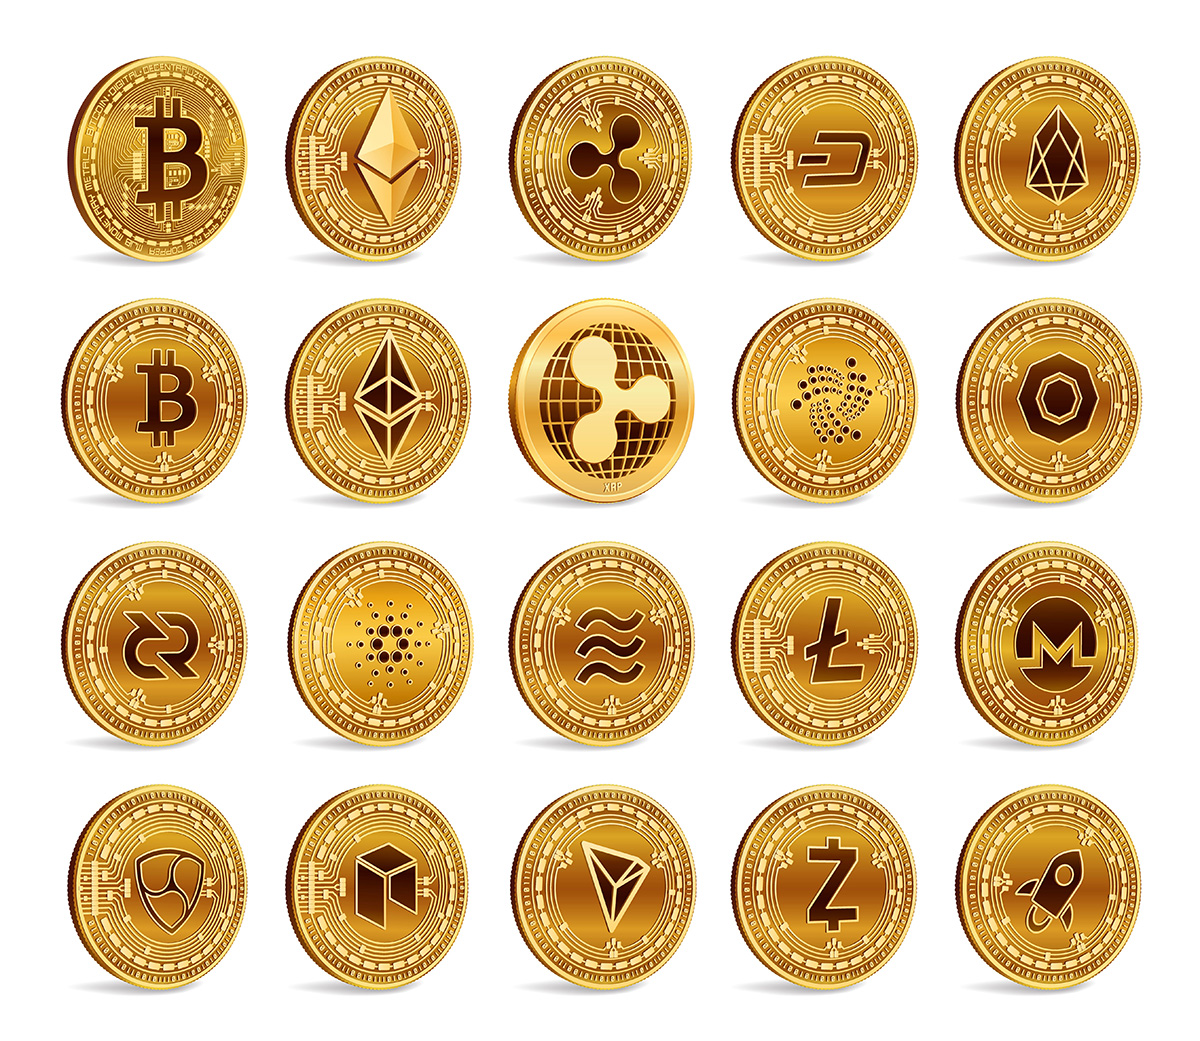 crypto currencies tied to precious metals